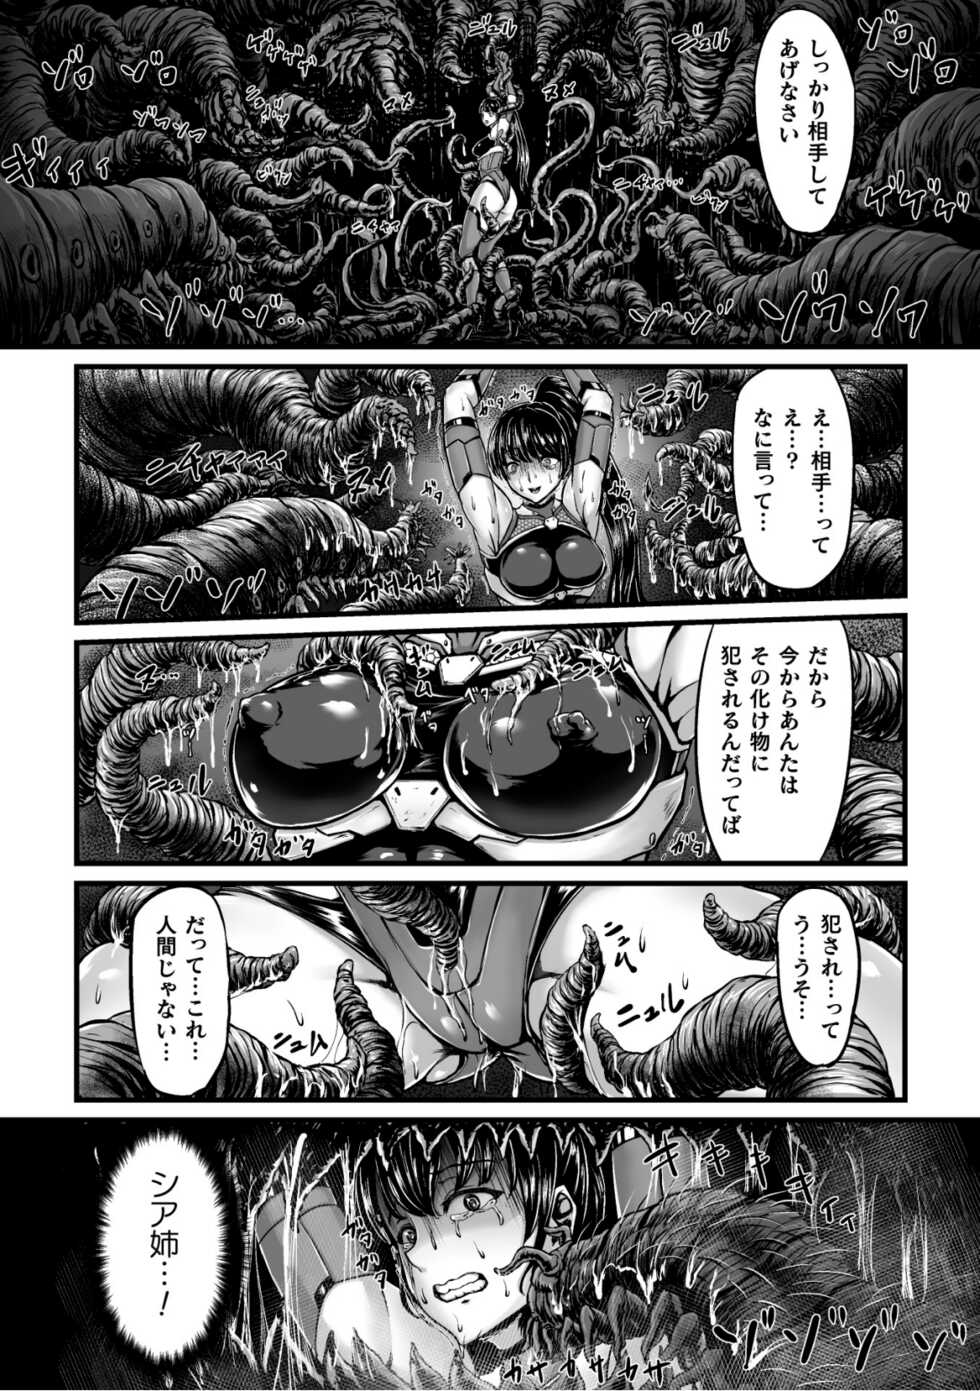 [yuyu] Kangoku Tentacle Battleship Episode 1 - Page 12